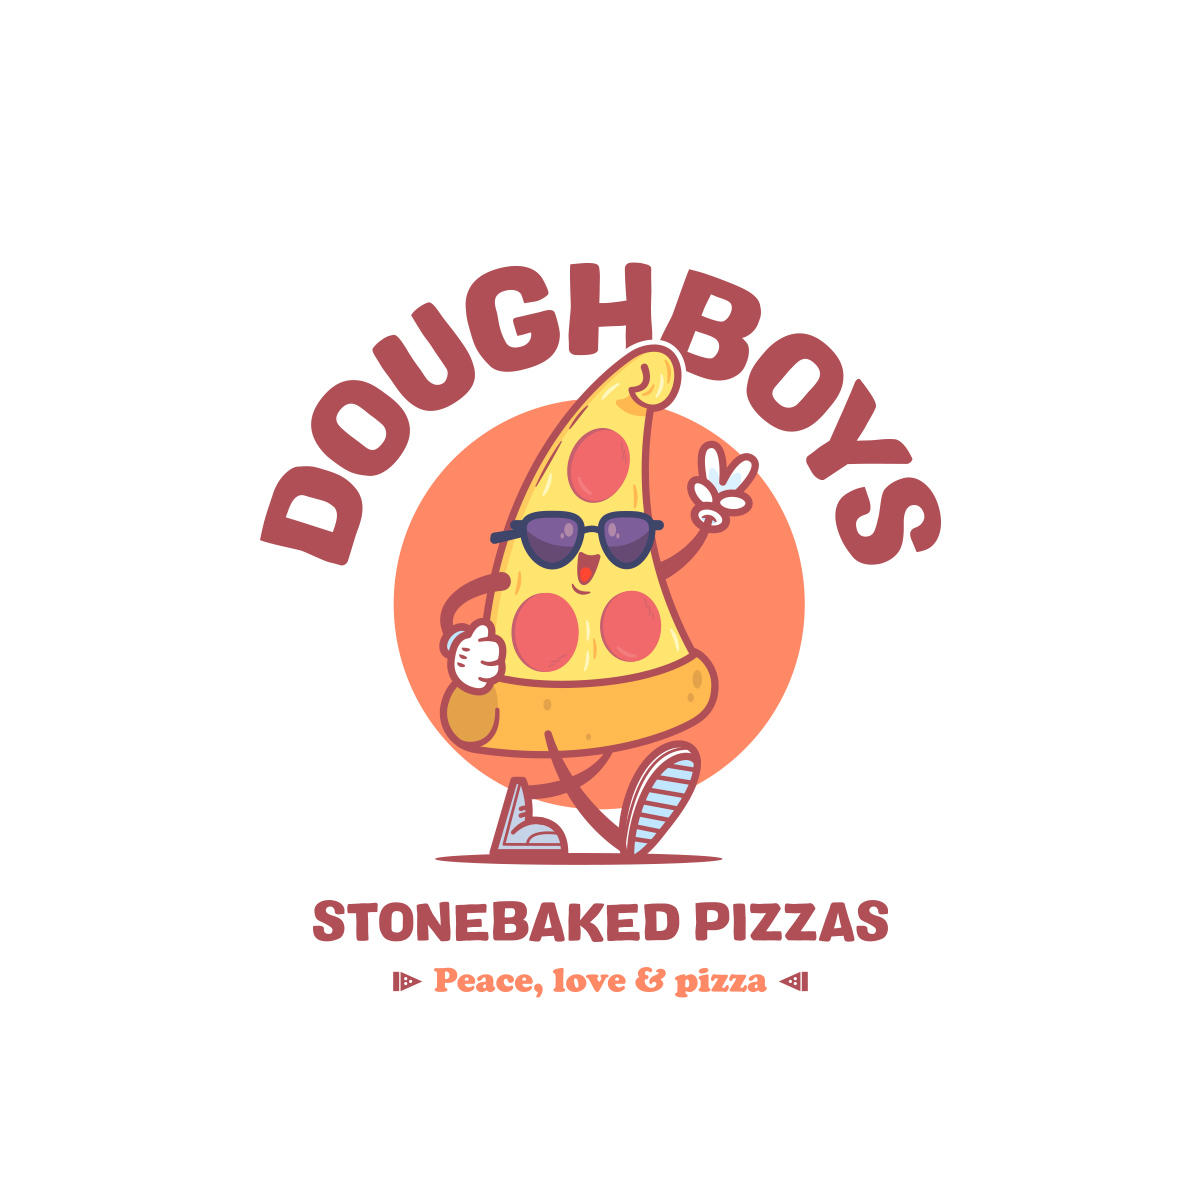 Various-Logos_Dough